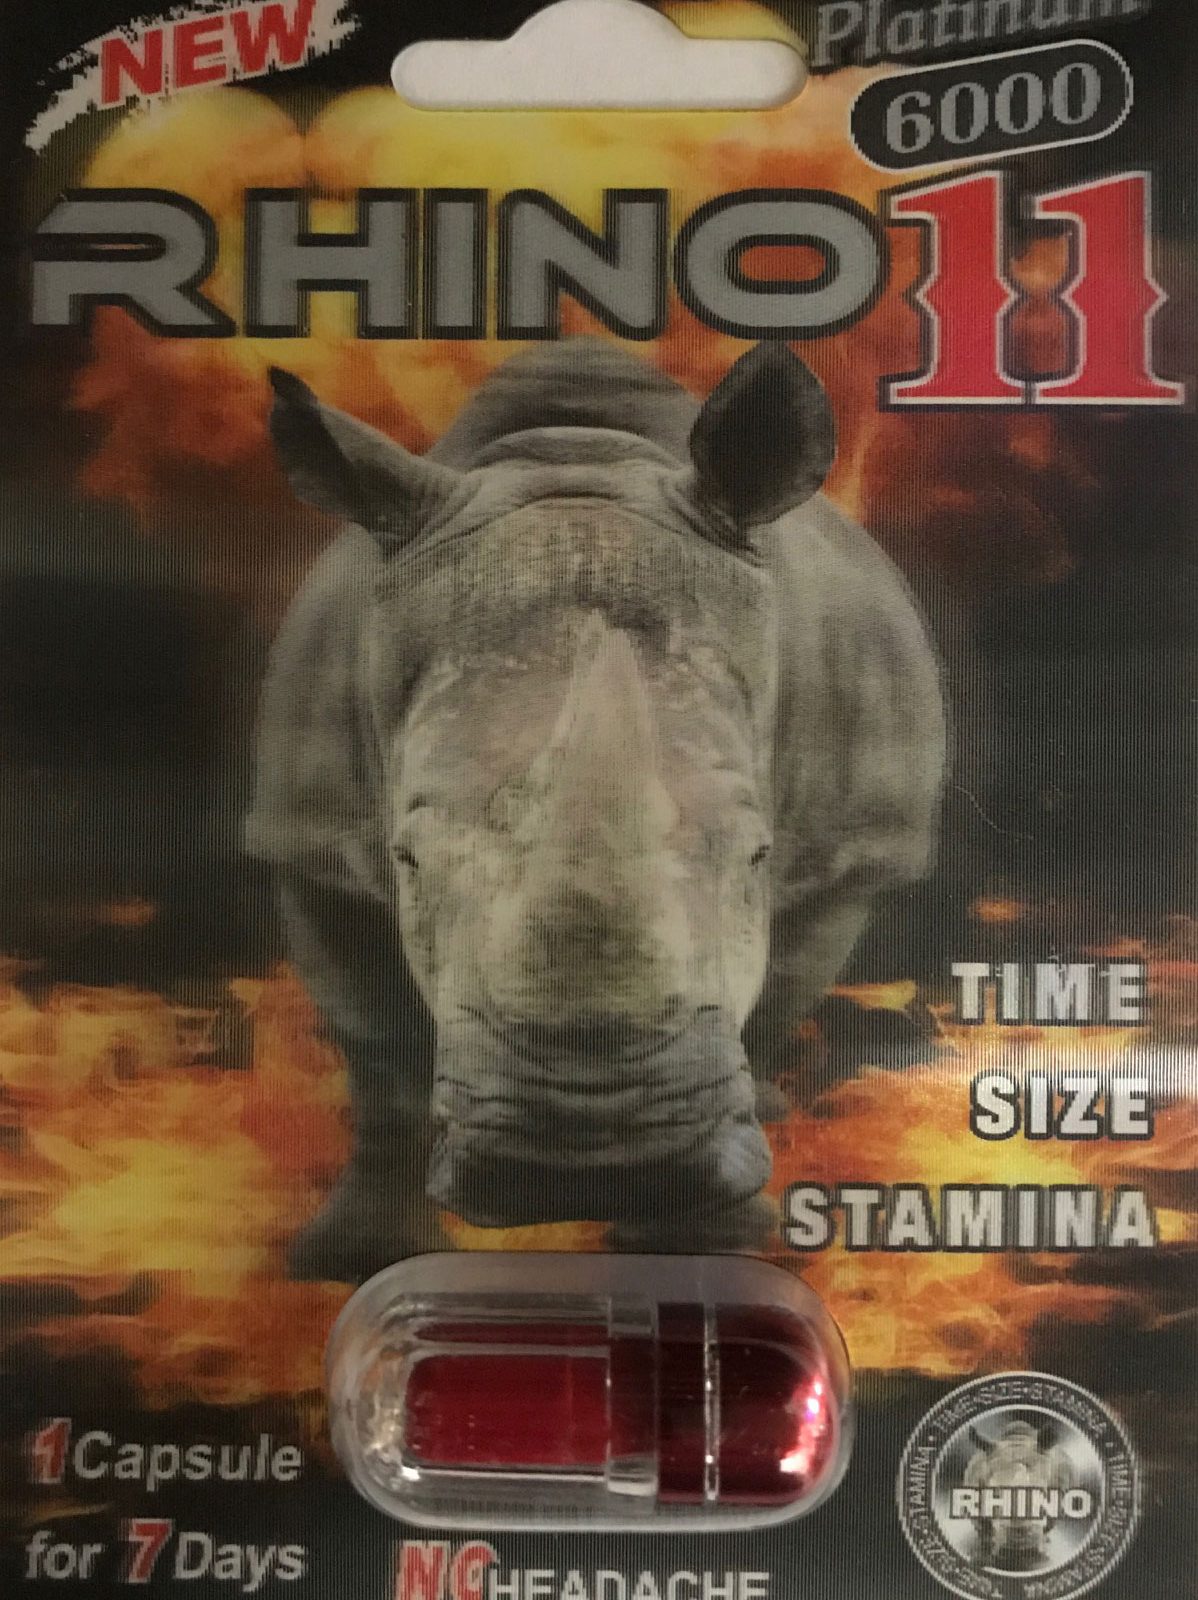 rhino 7 platium 5000